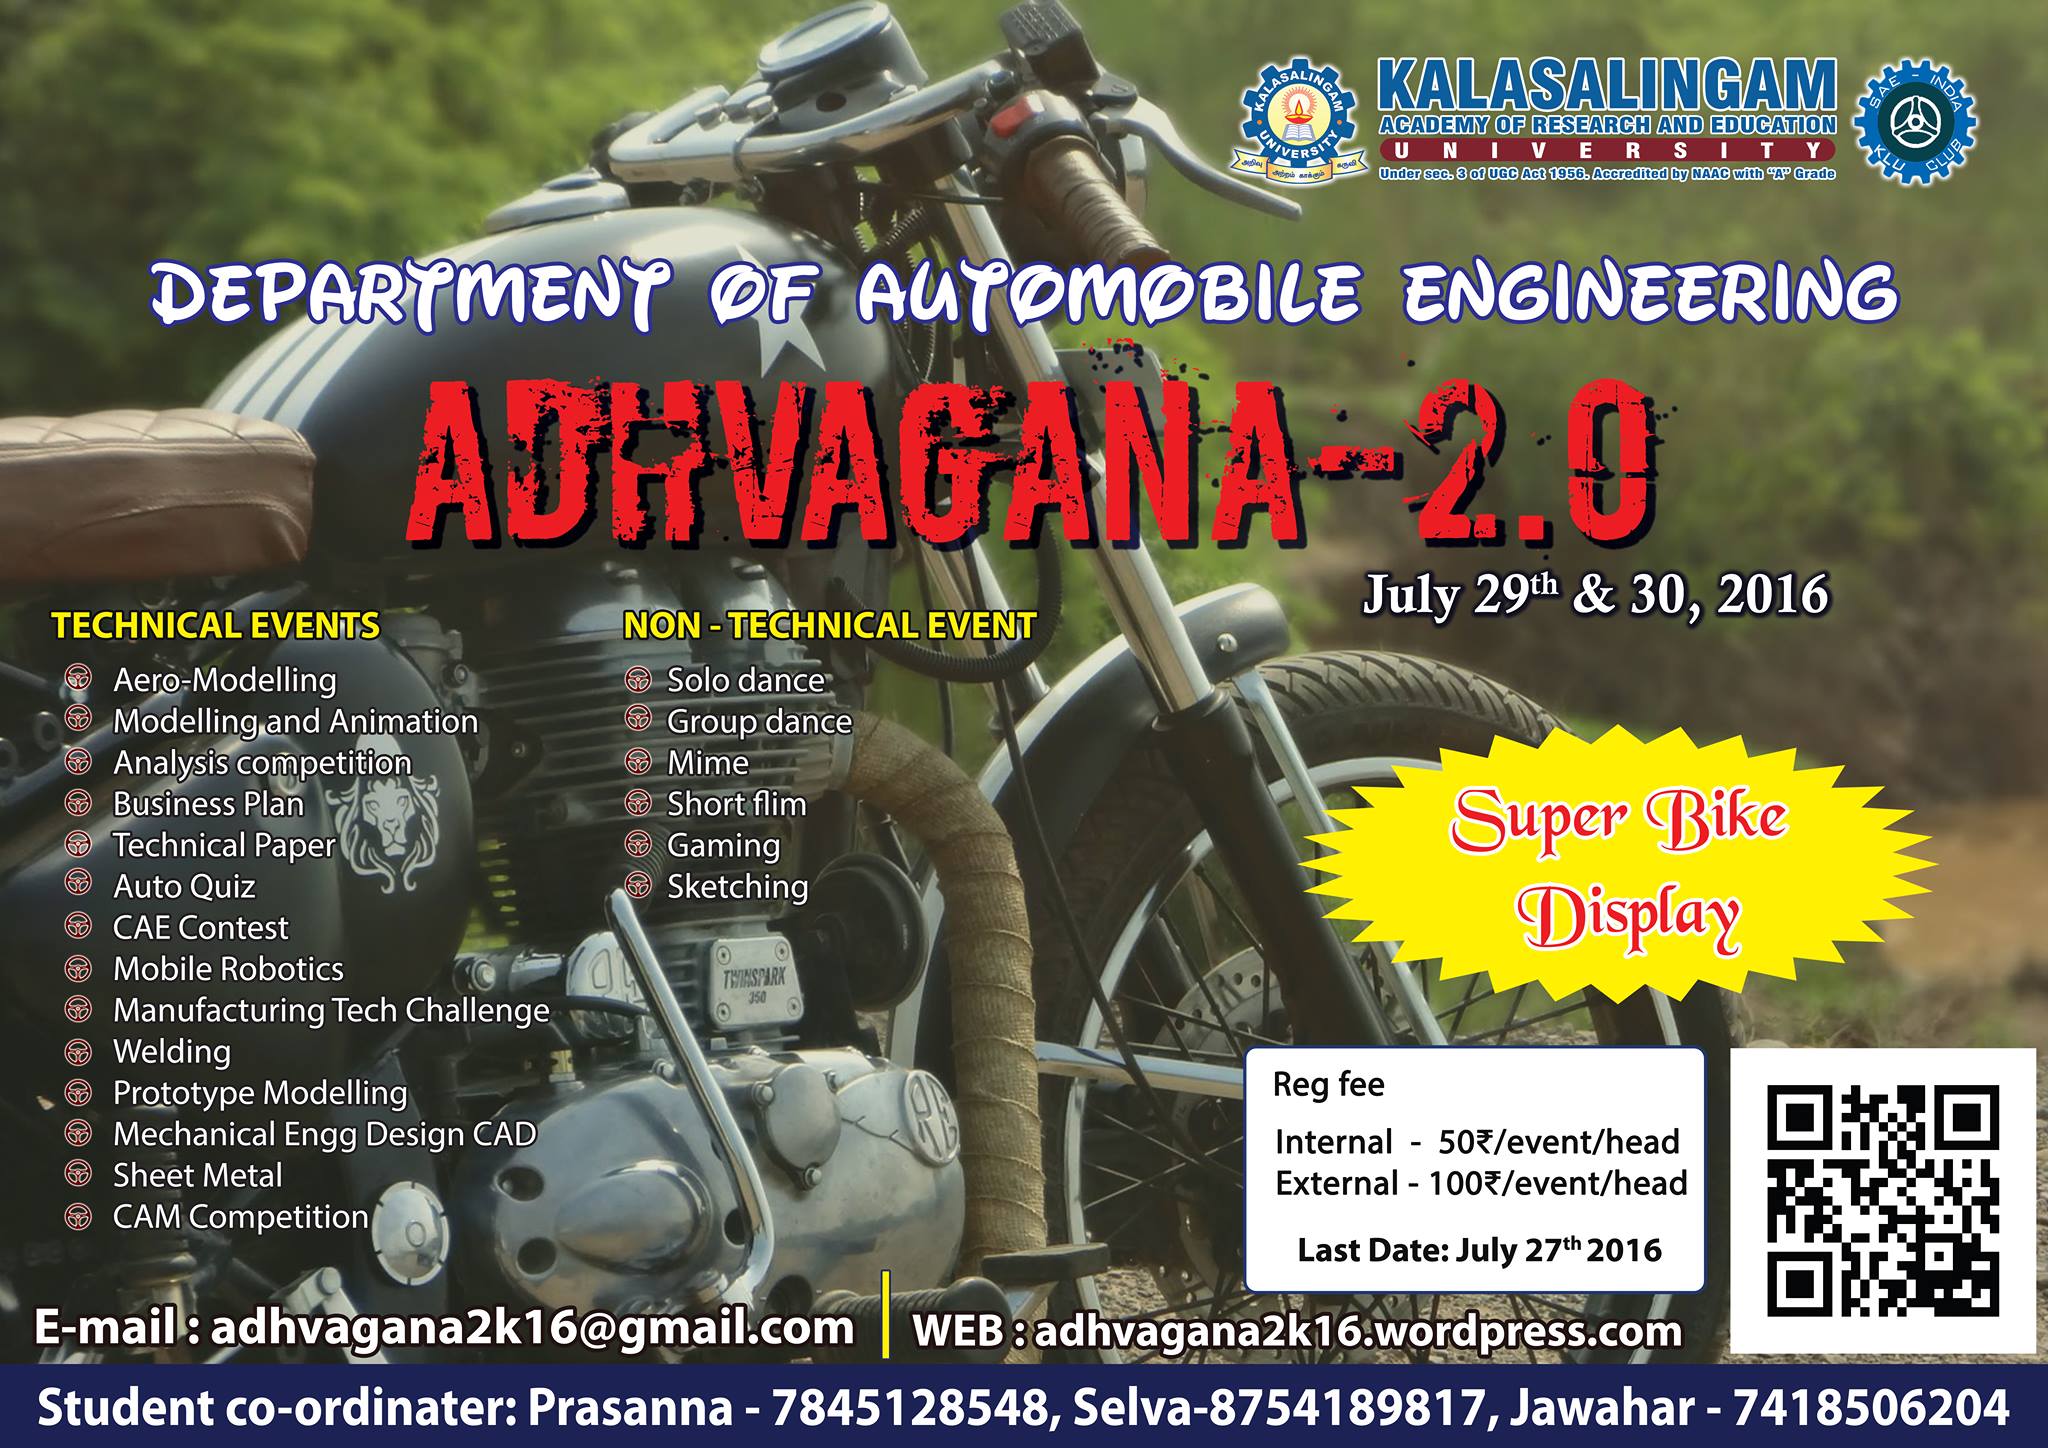 ADHVAGANA 2.0, Virudhunagar, Tamil Nadu, India